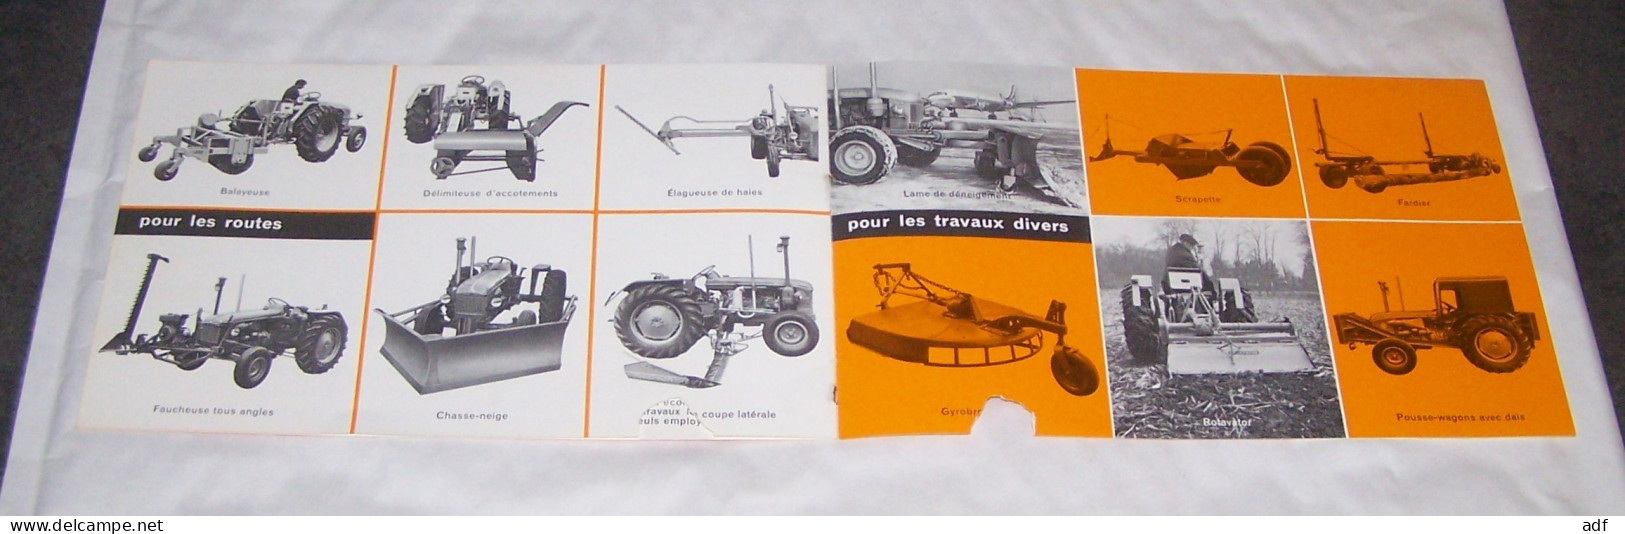 LIVRET PUB PUBLICITAIRE TRACTEURS RENAULT, TRACTEUR RENAULT P70 P 70, TRAVAUX PUBLICS PONTS ET CHAUSSEES - Tractors